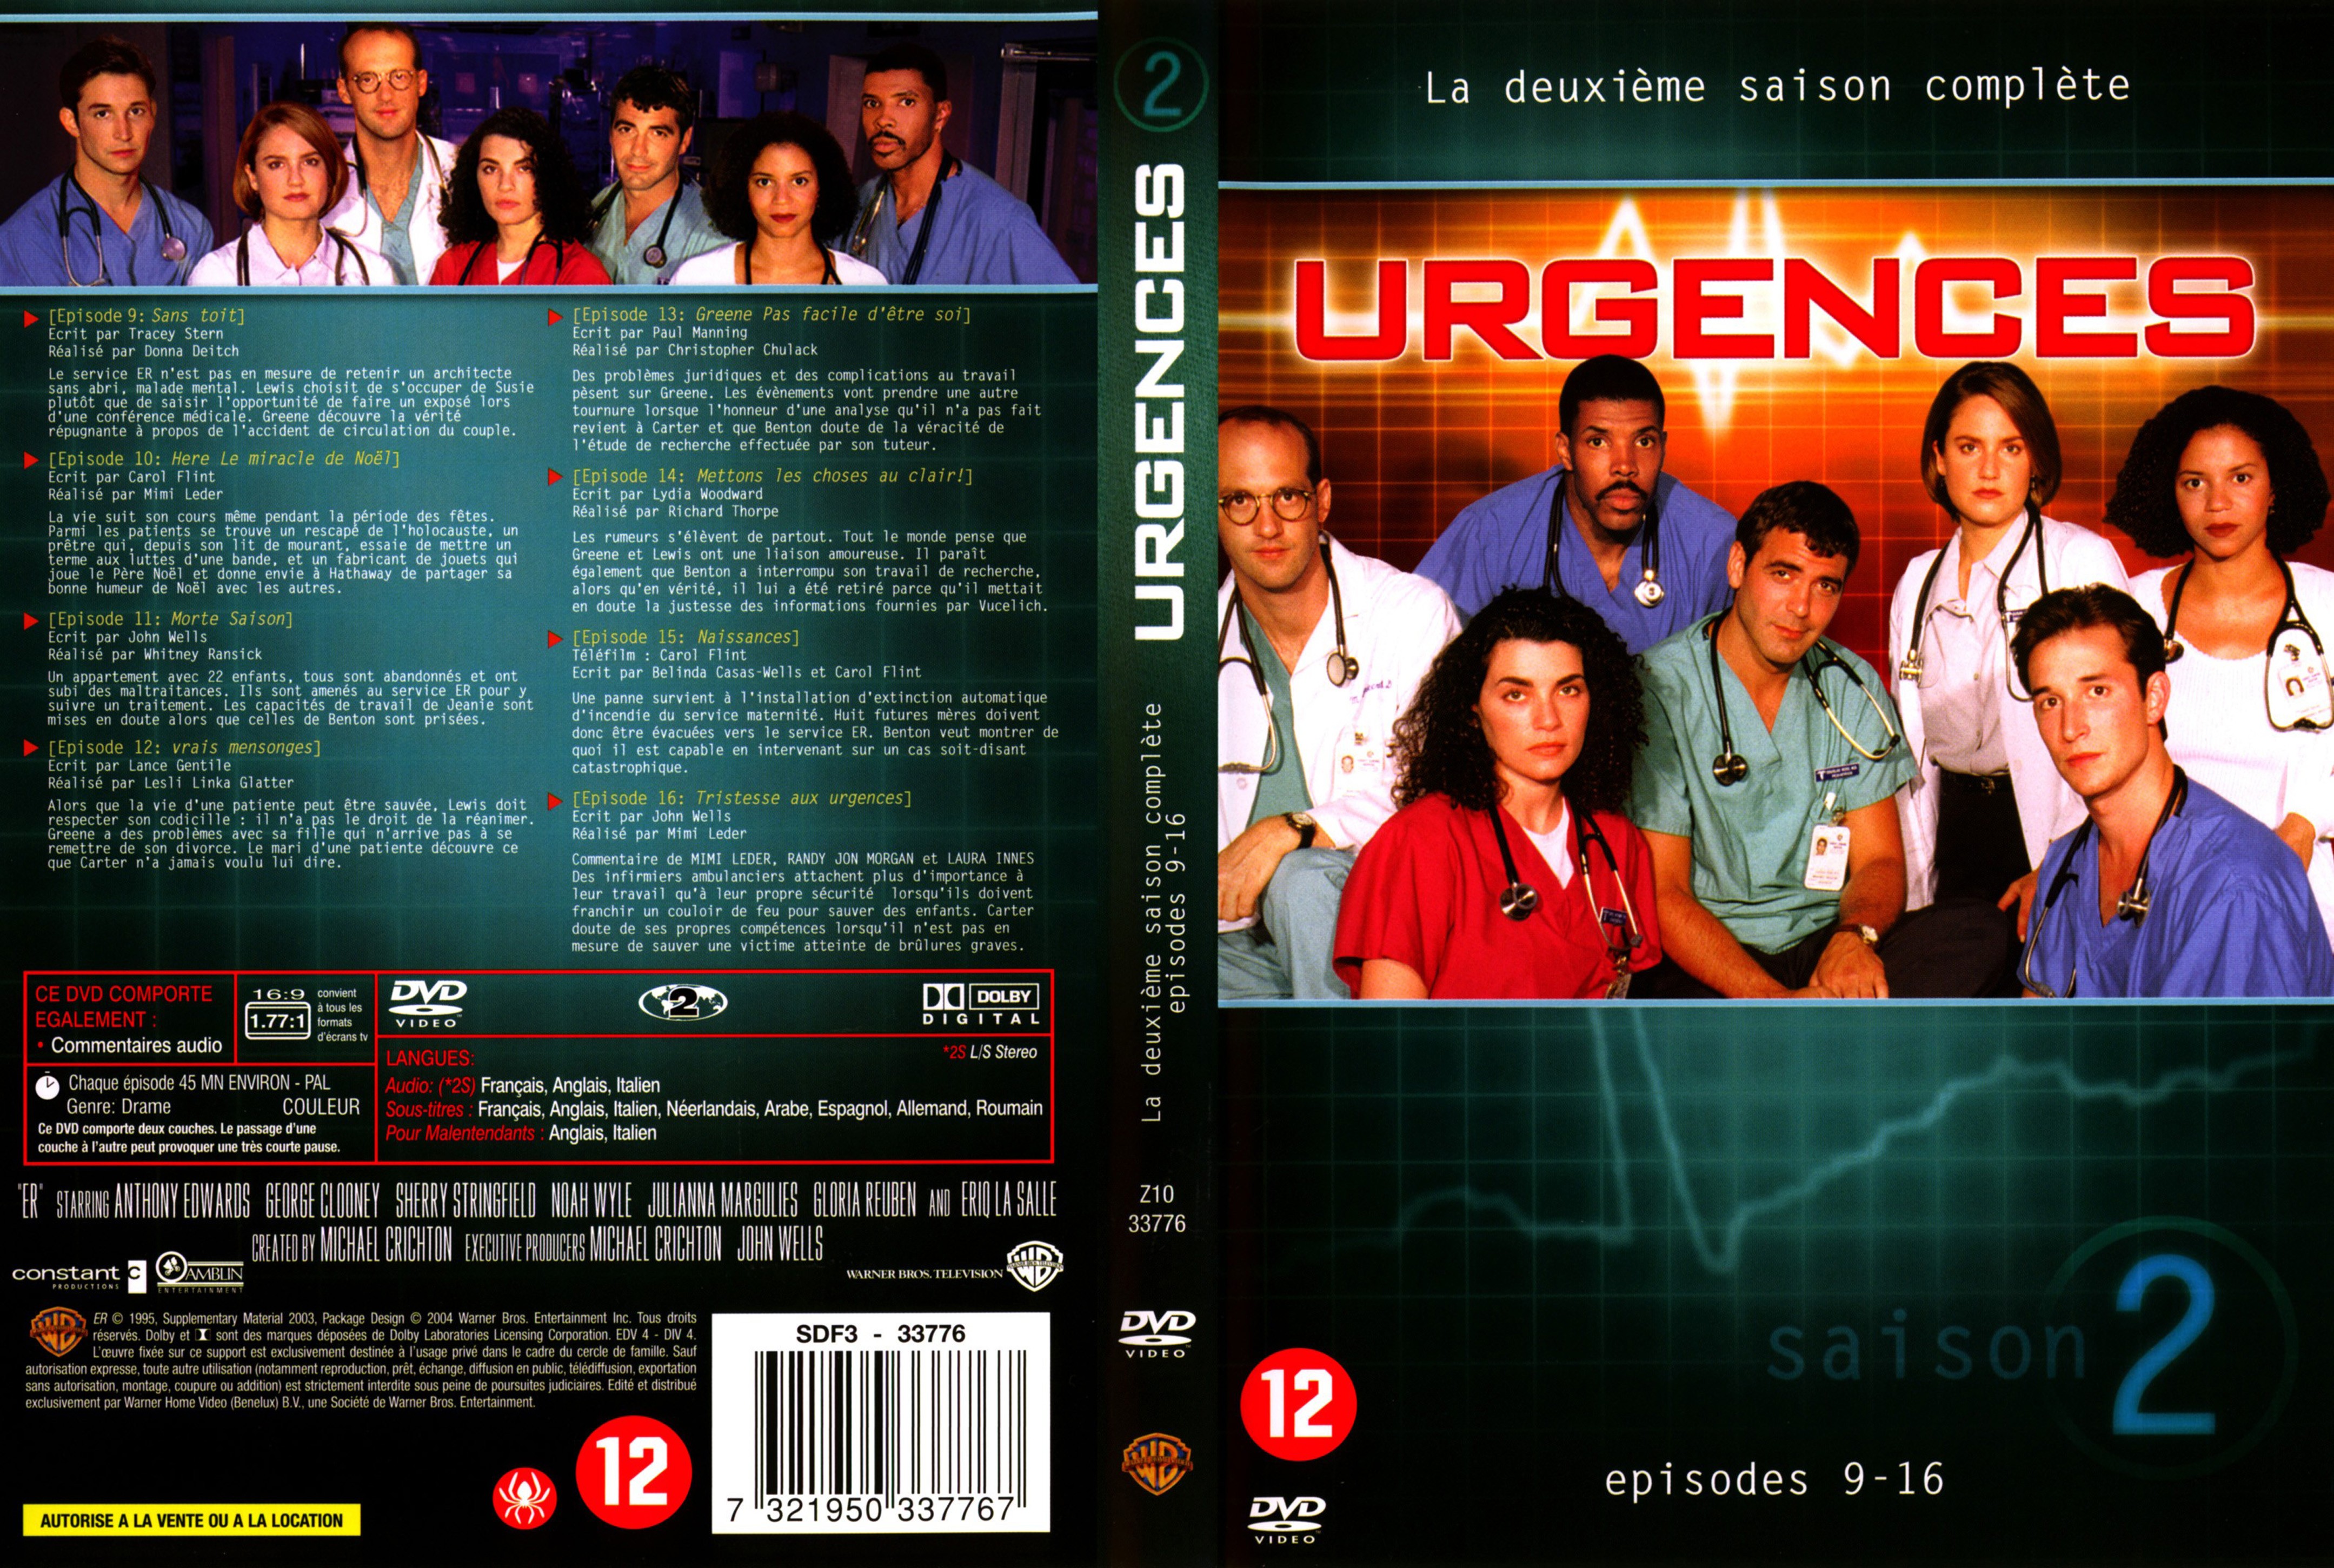 Jaquette DVD Urgences saison 2 vol 2